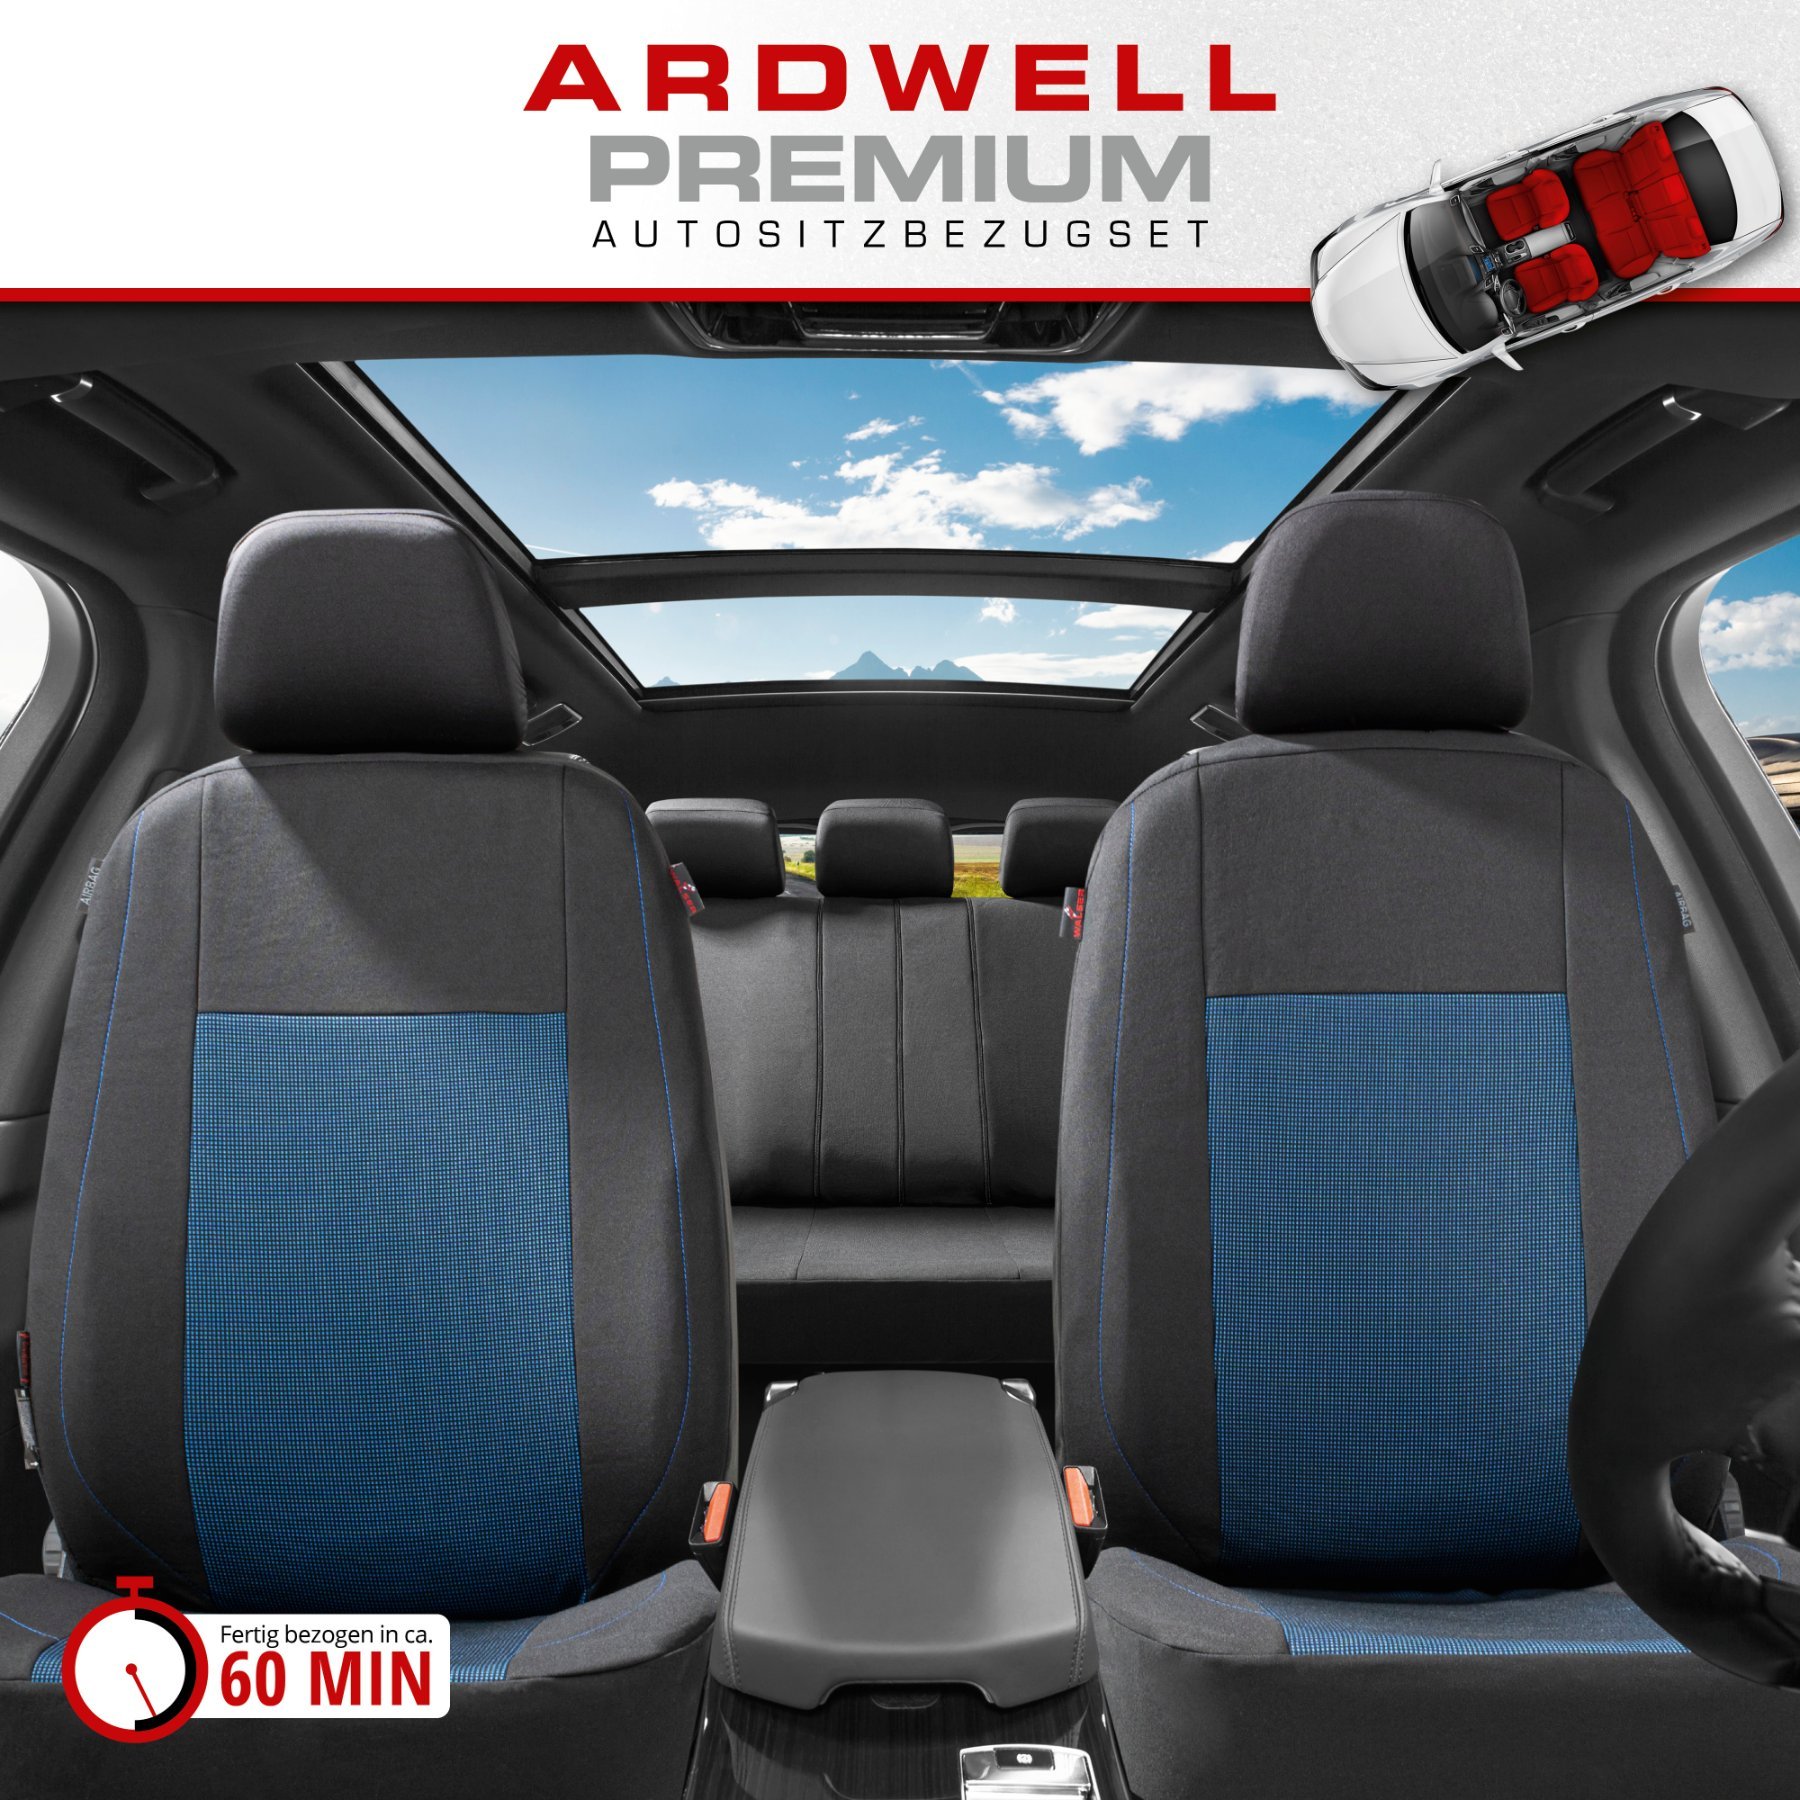 Autositzbezug ZIPP-IT Premium Ardwell, PKW-Schonbezüge Komplettset mit Reißverschluss-System schwarz/blau